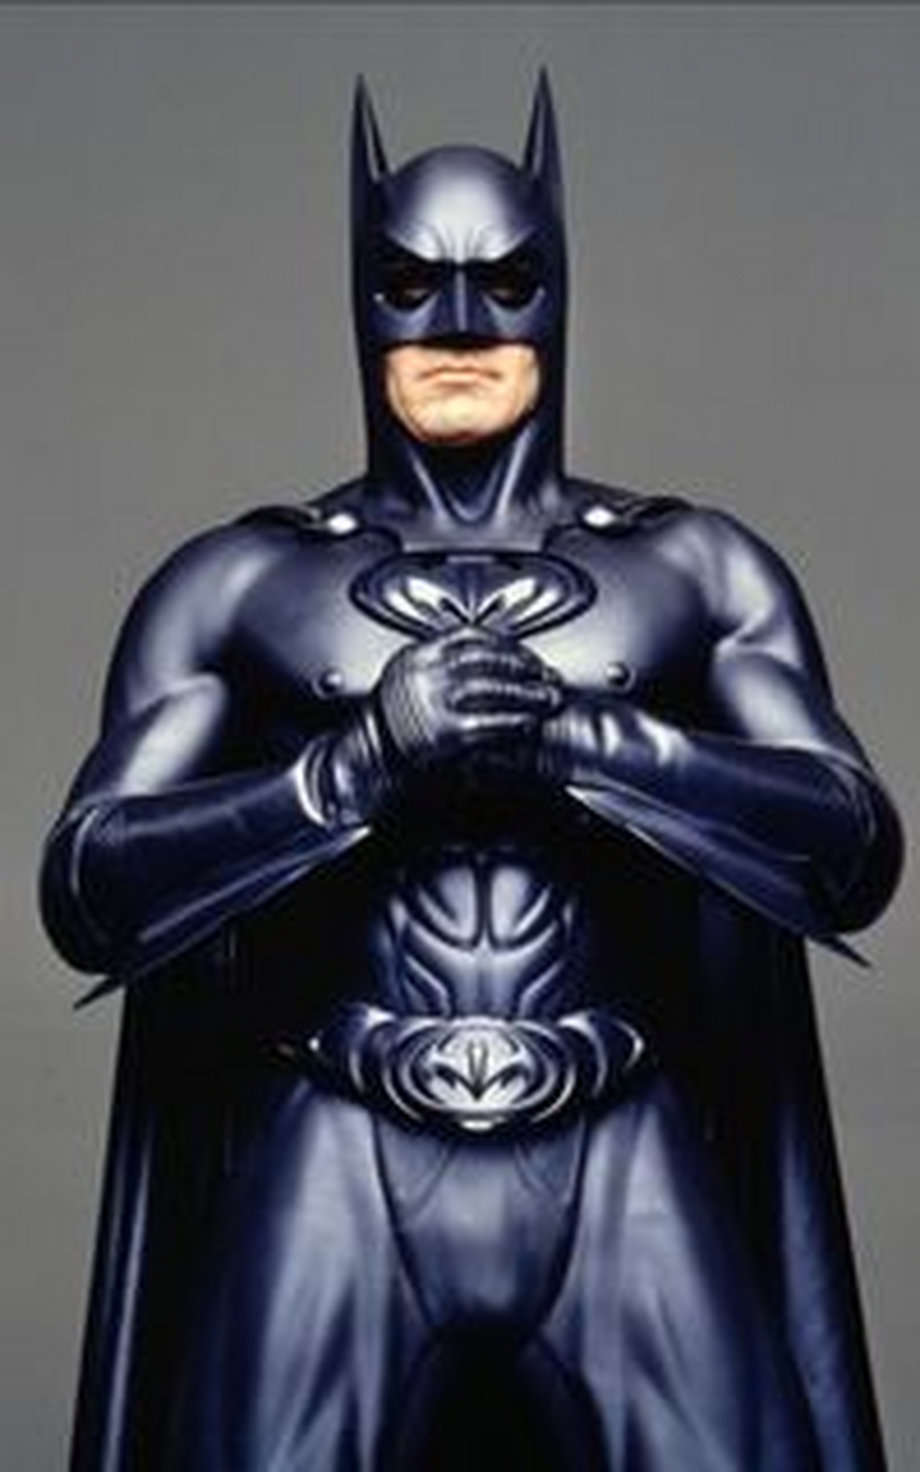 George Clooney as Batman.